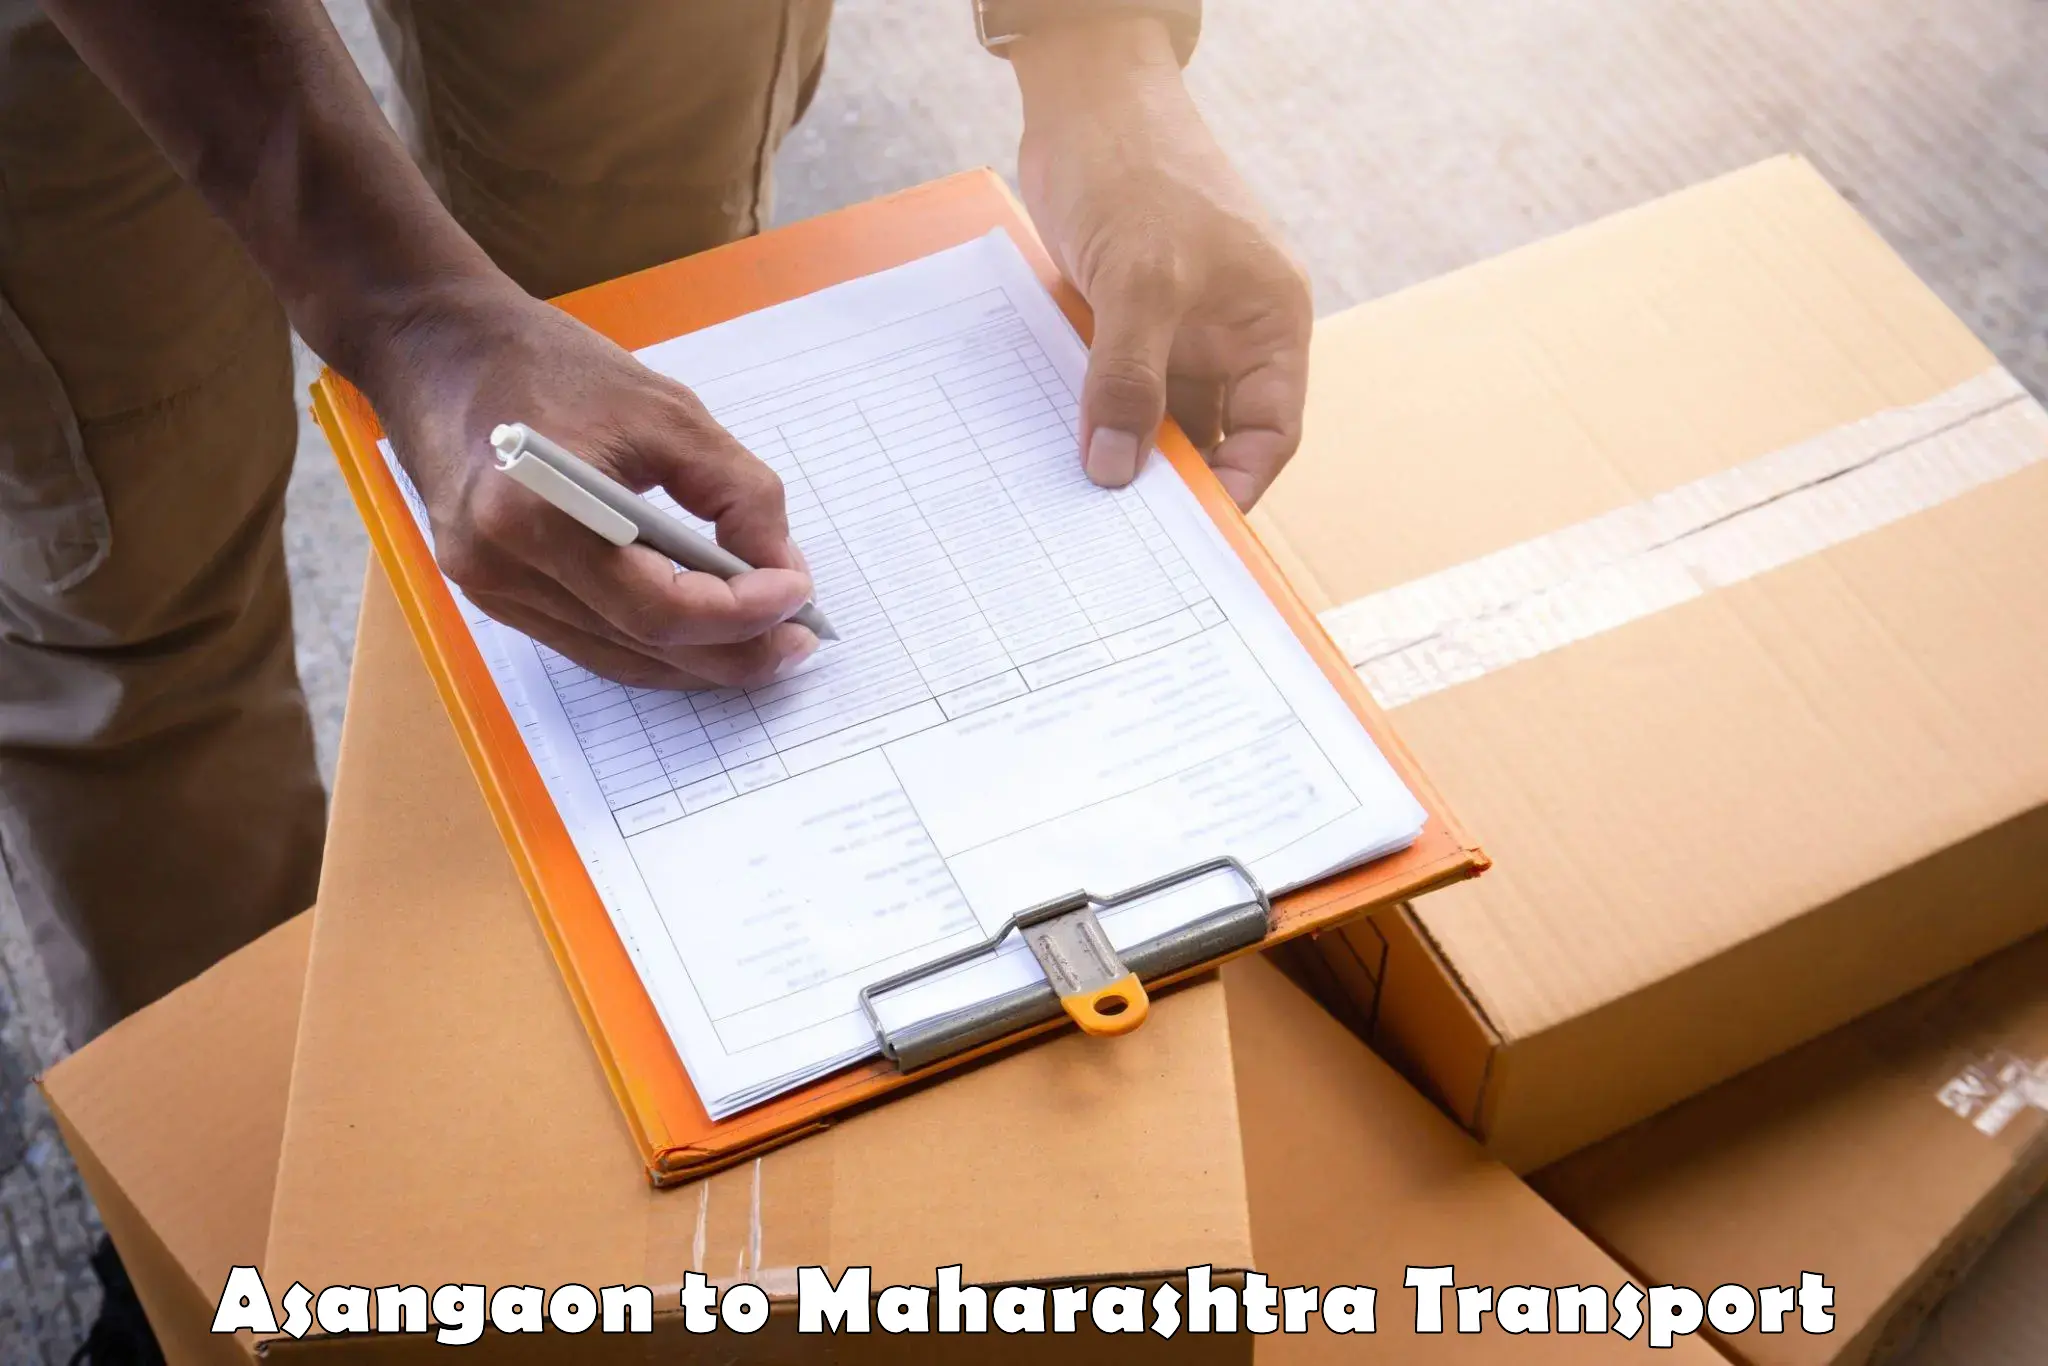 Shipping partner Asangaon to Daryapur